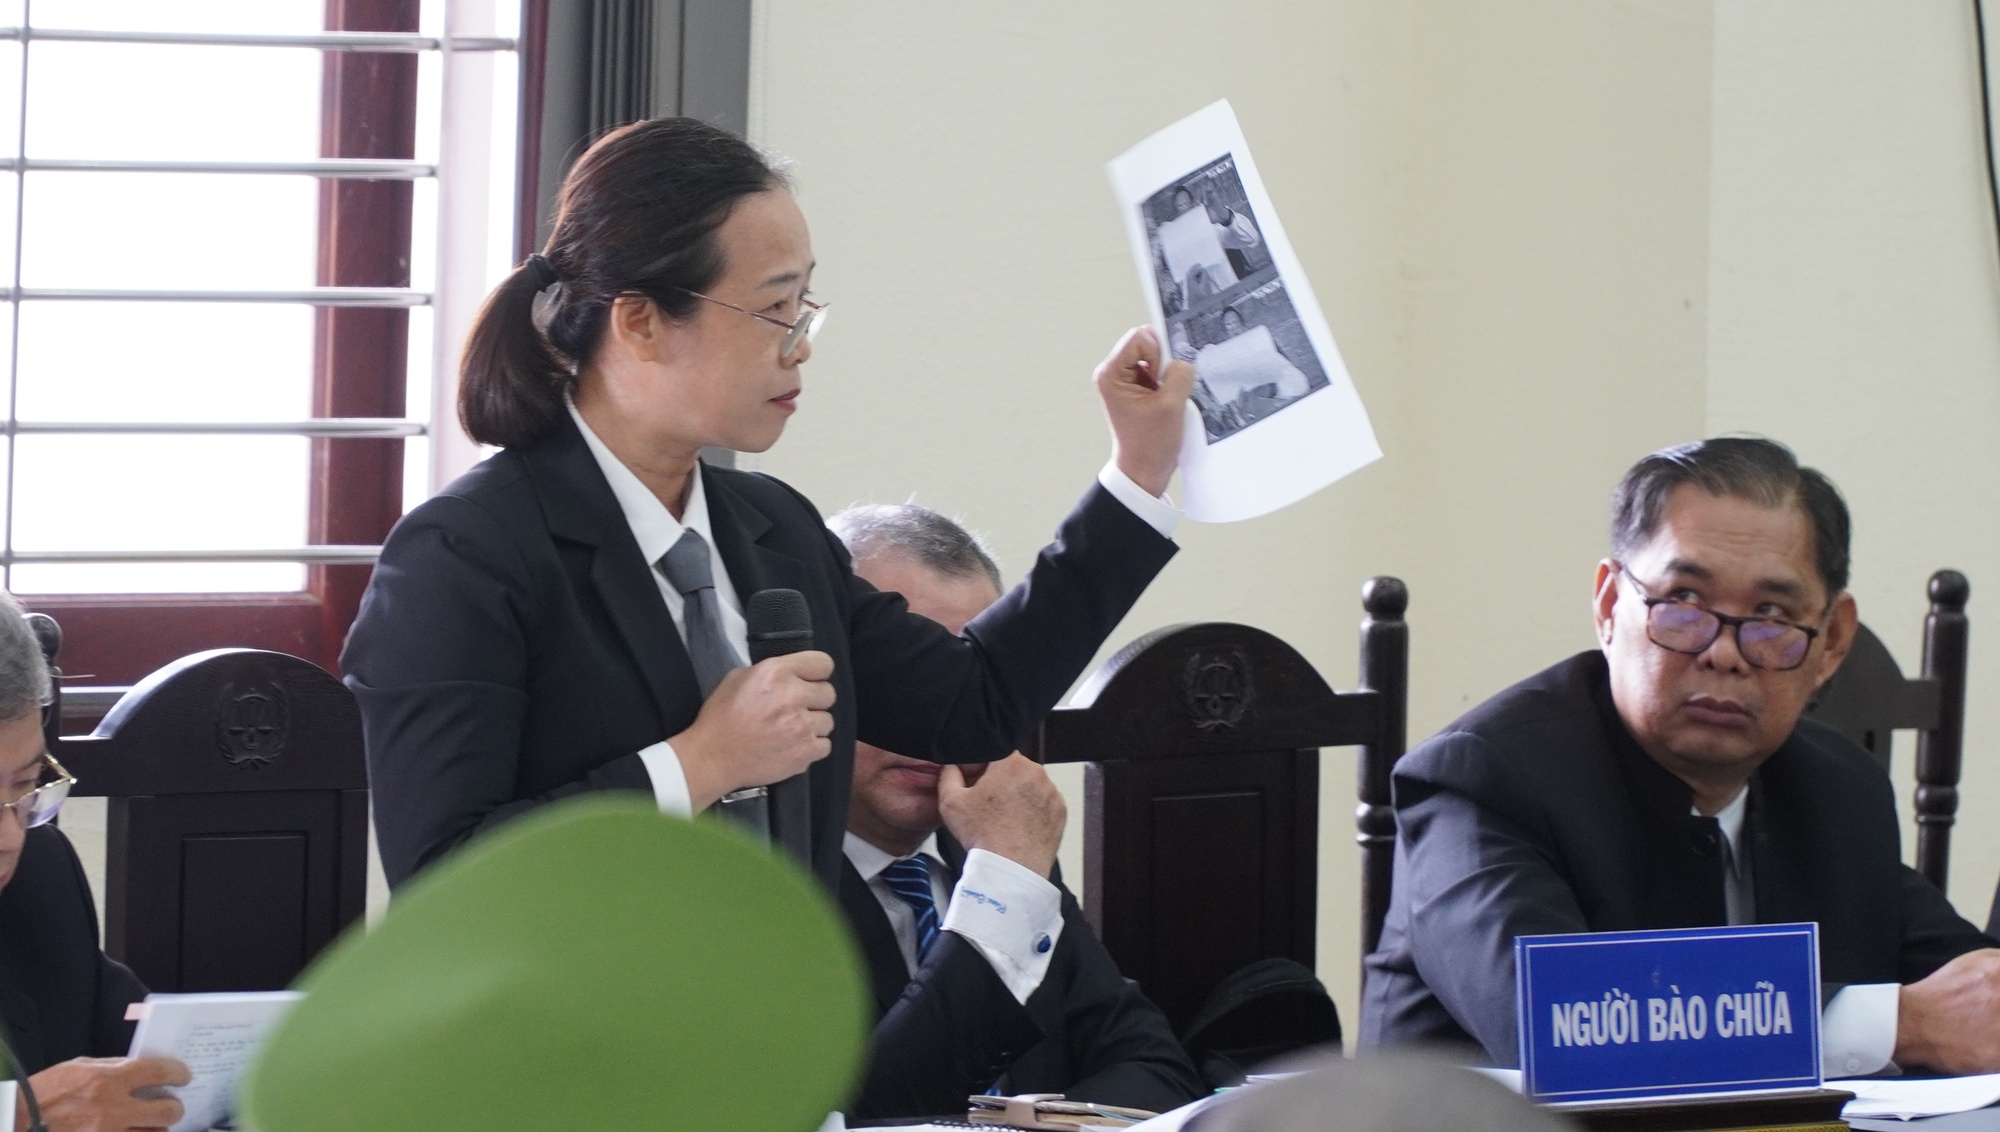 Chùm ảnh: Bị cáo Lê Tùng Vân vắng mặt tại phiên tòa phúc thẩm - Ảnh 8.